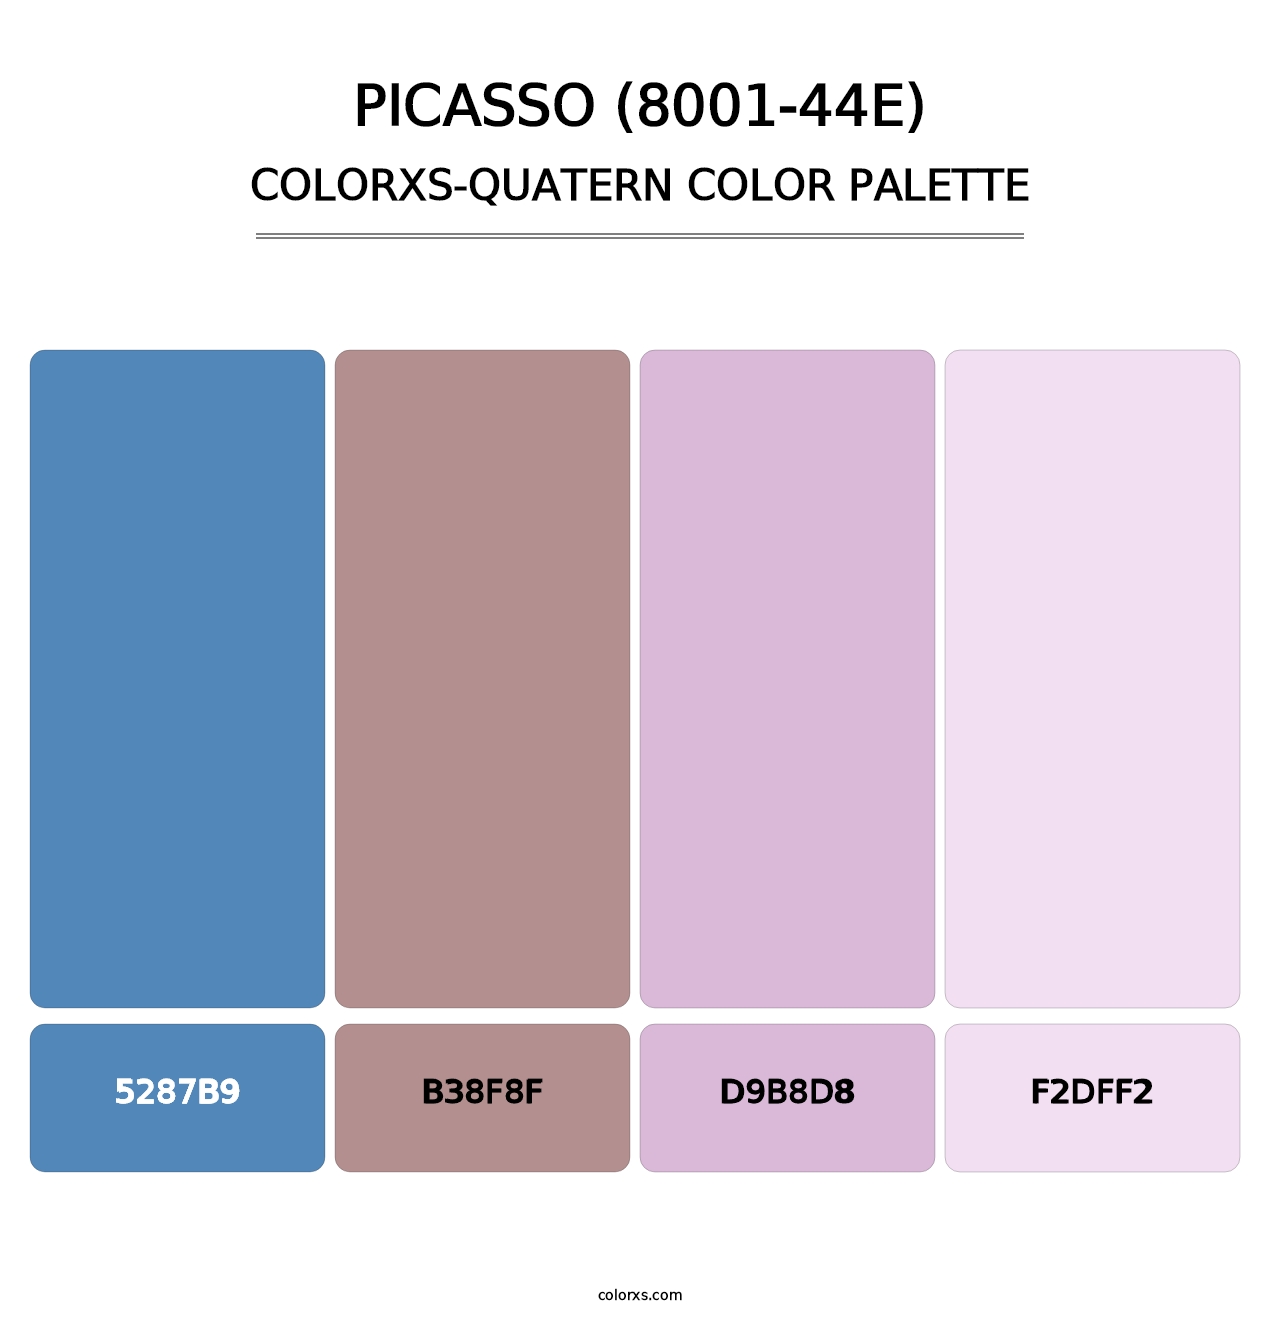 Picasso (8001-44E) - Colorxs Quatern Palette